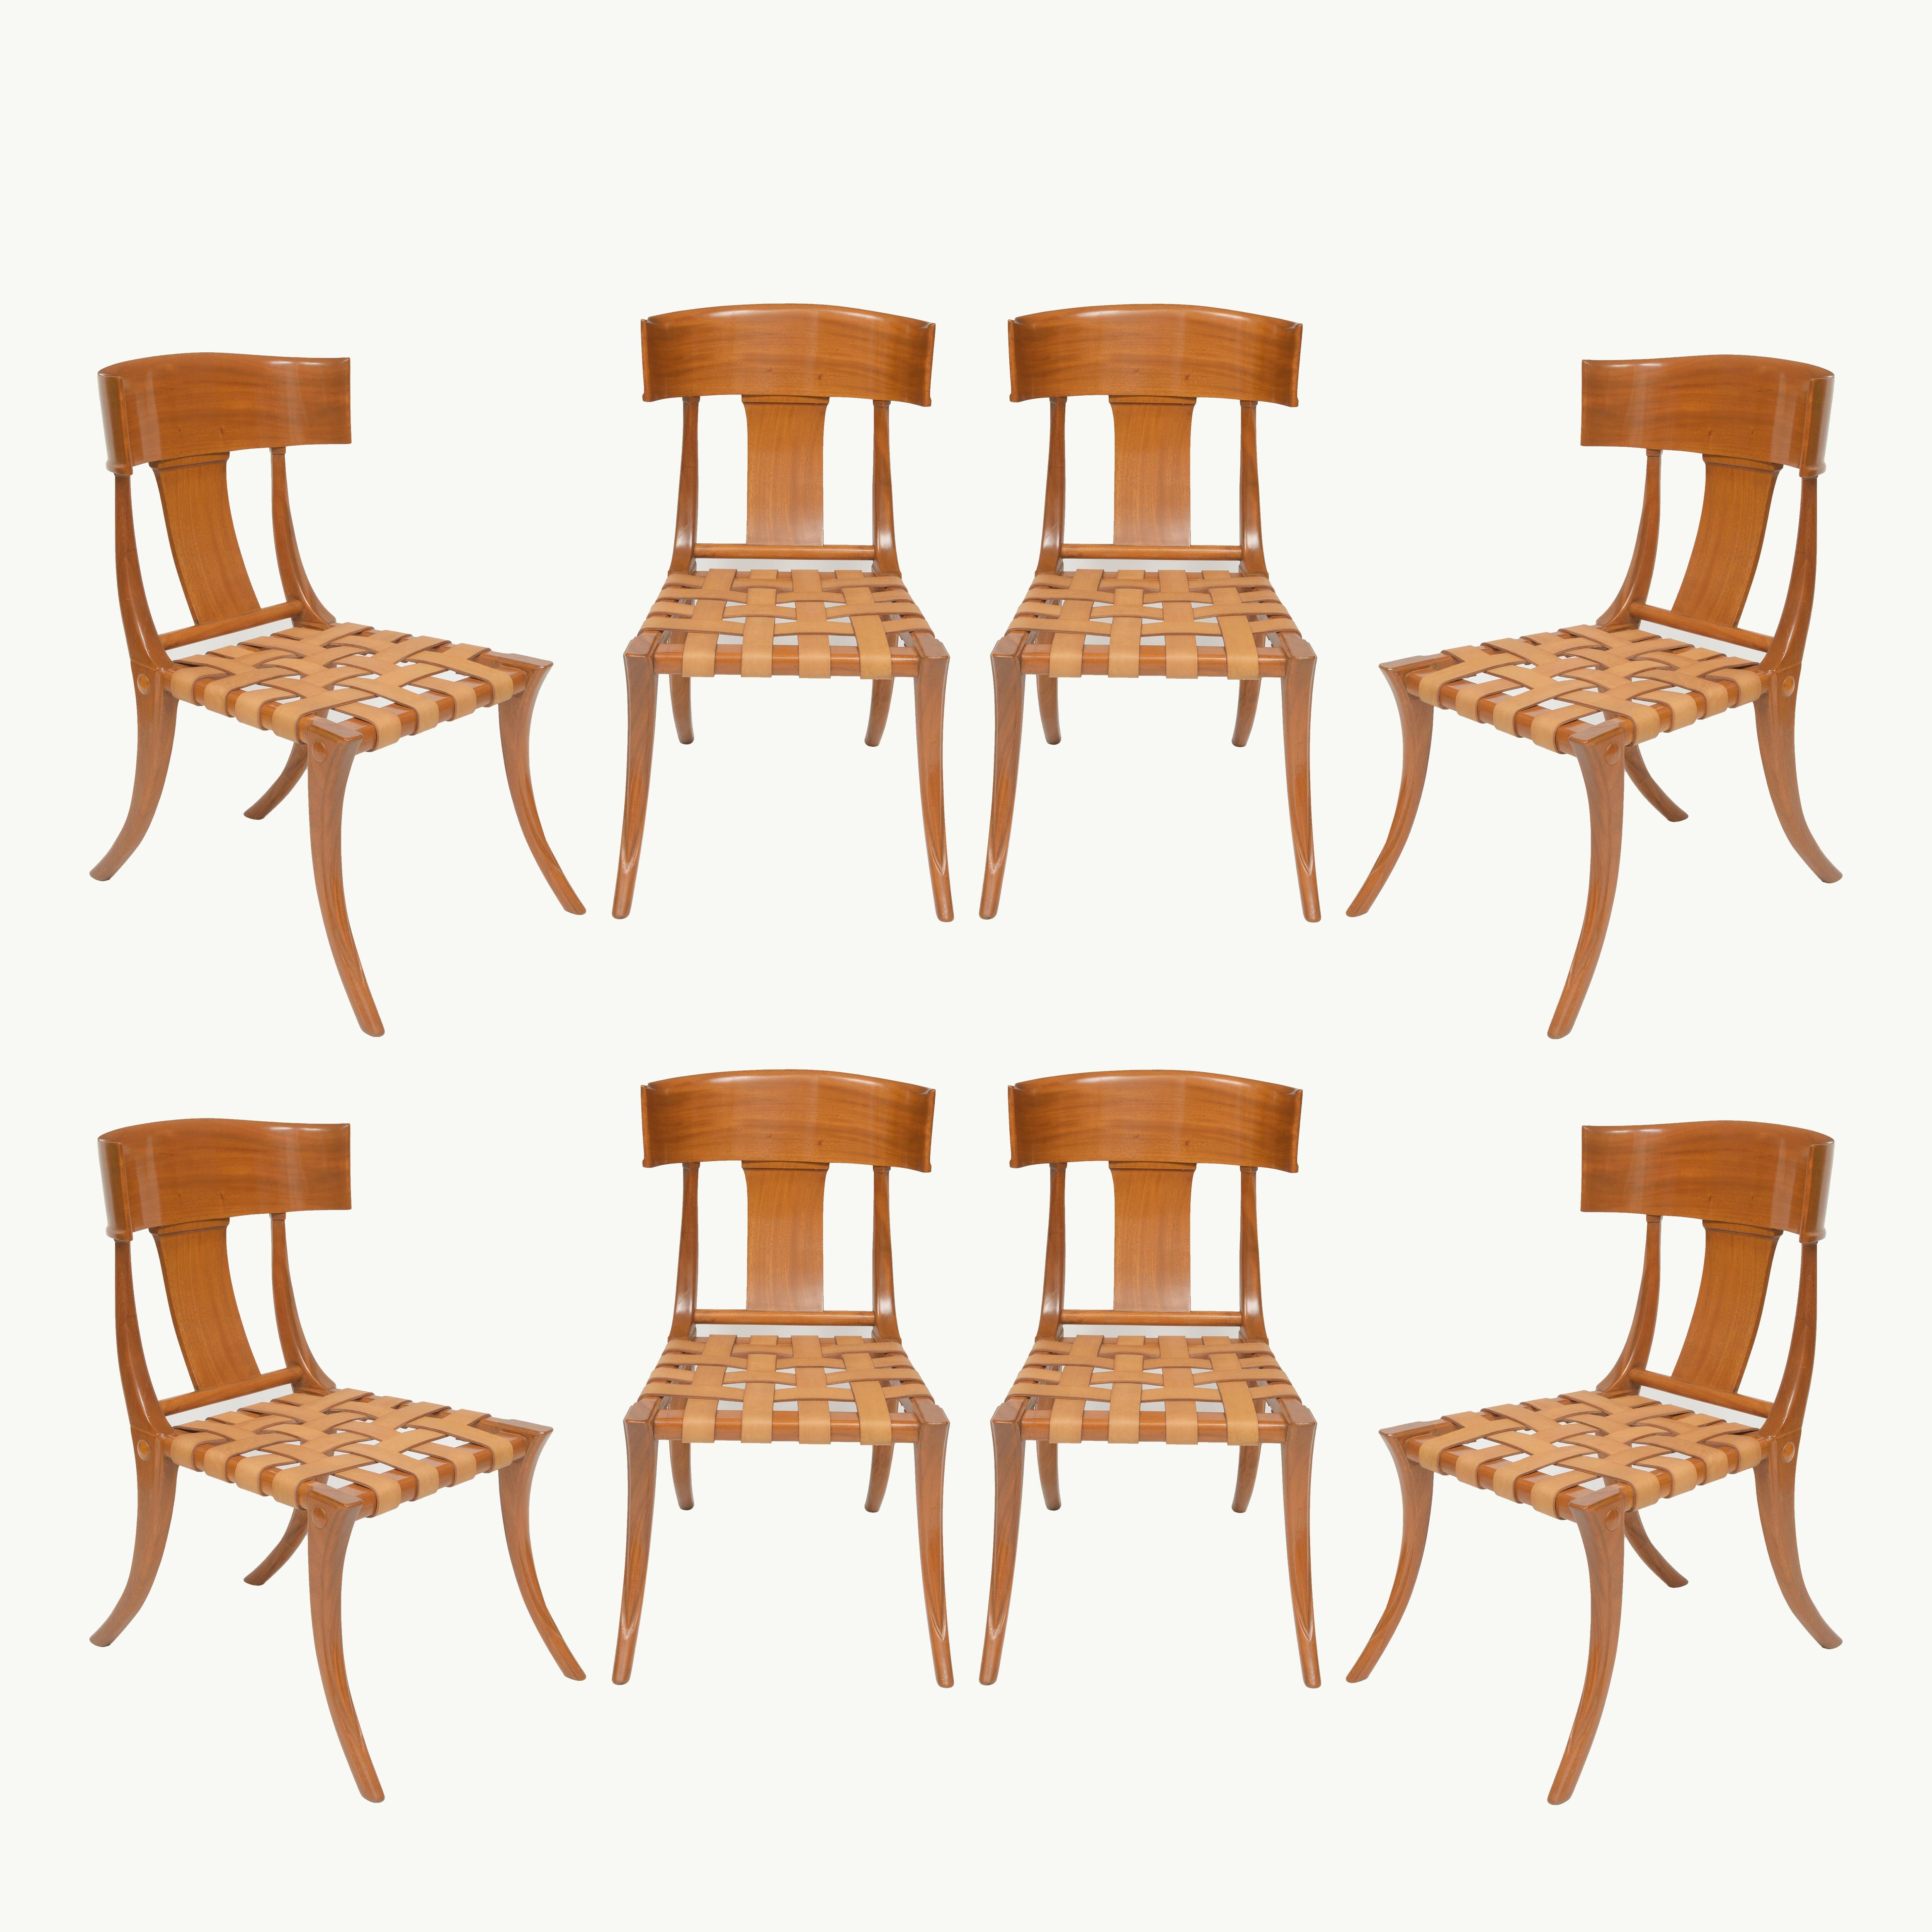 Modèle de Klismos égyptien très décoratif copié par Robsjohn Gibbings dans les années soixante et aujourd'hui recréé par Johnathan Sainsbury de Londres. Cet ensemble a été fabriqué en 2020 avec des sièges en cuir tressé.

Design/One développé par